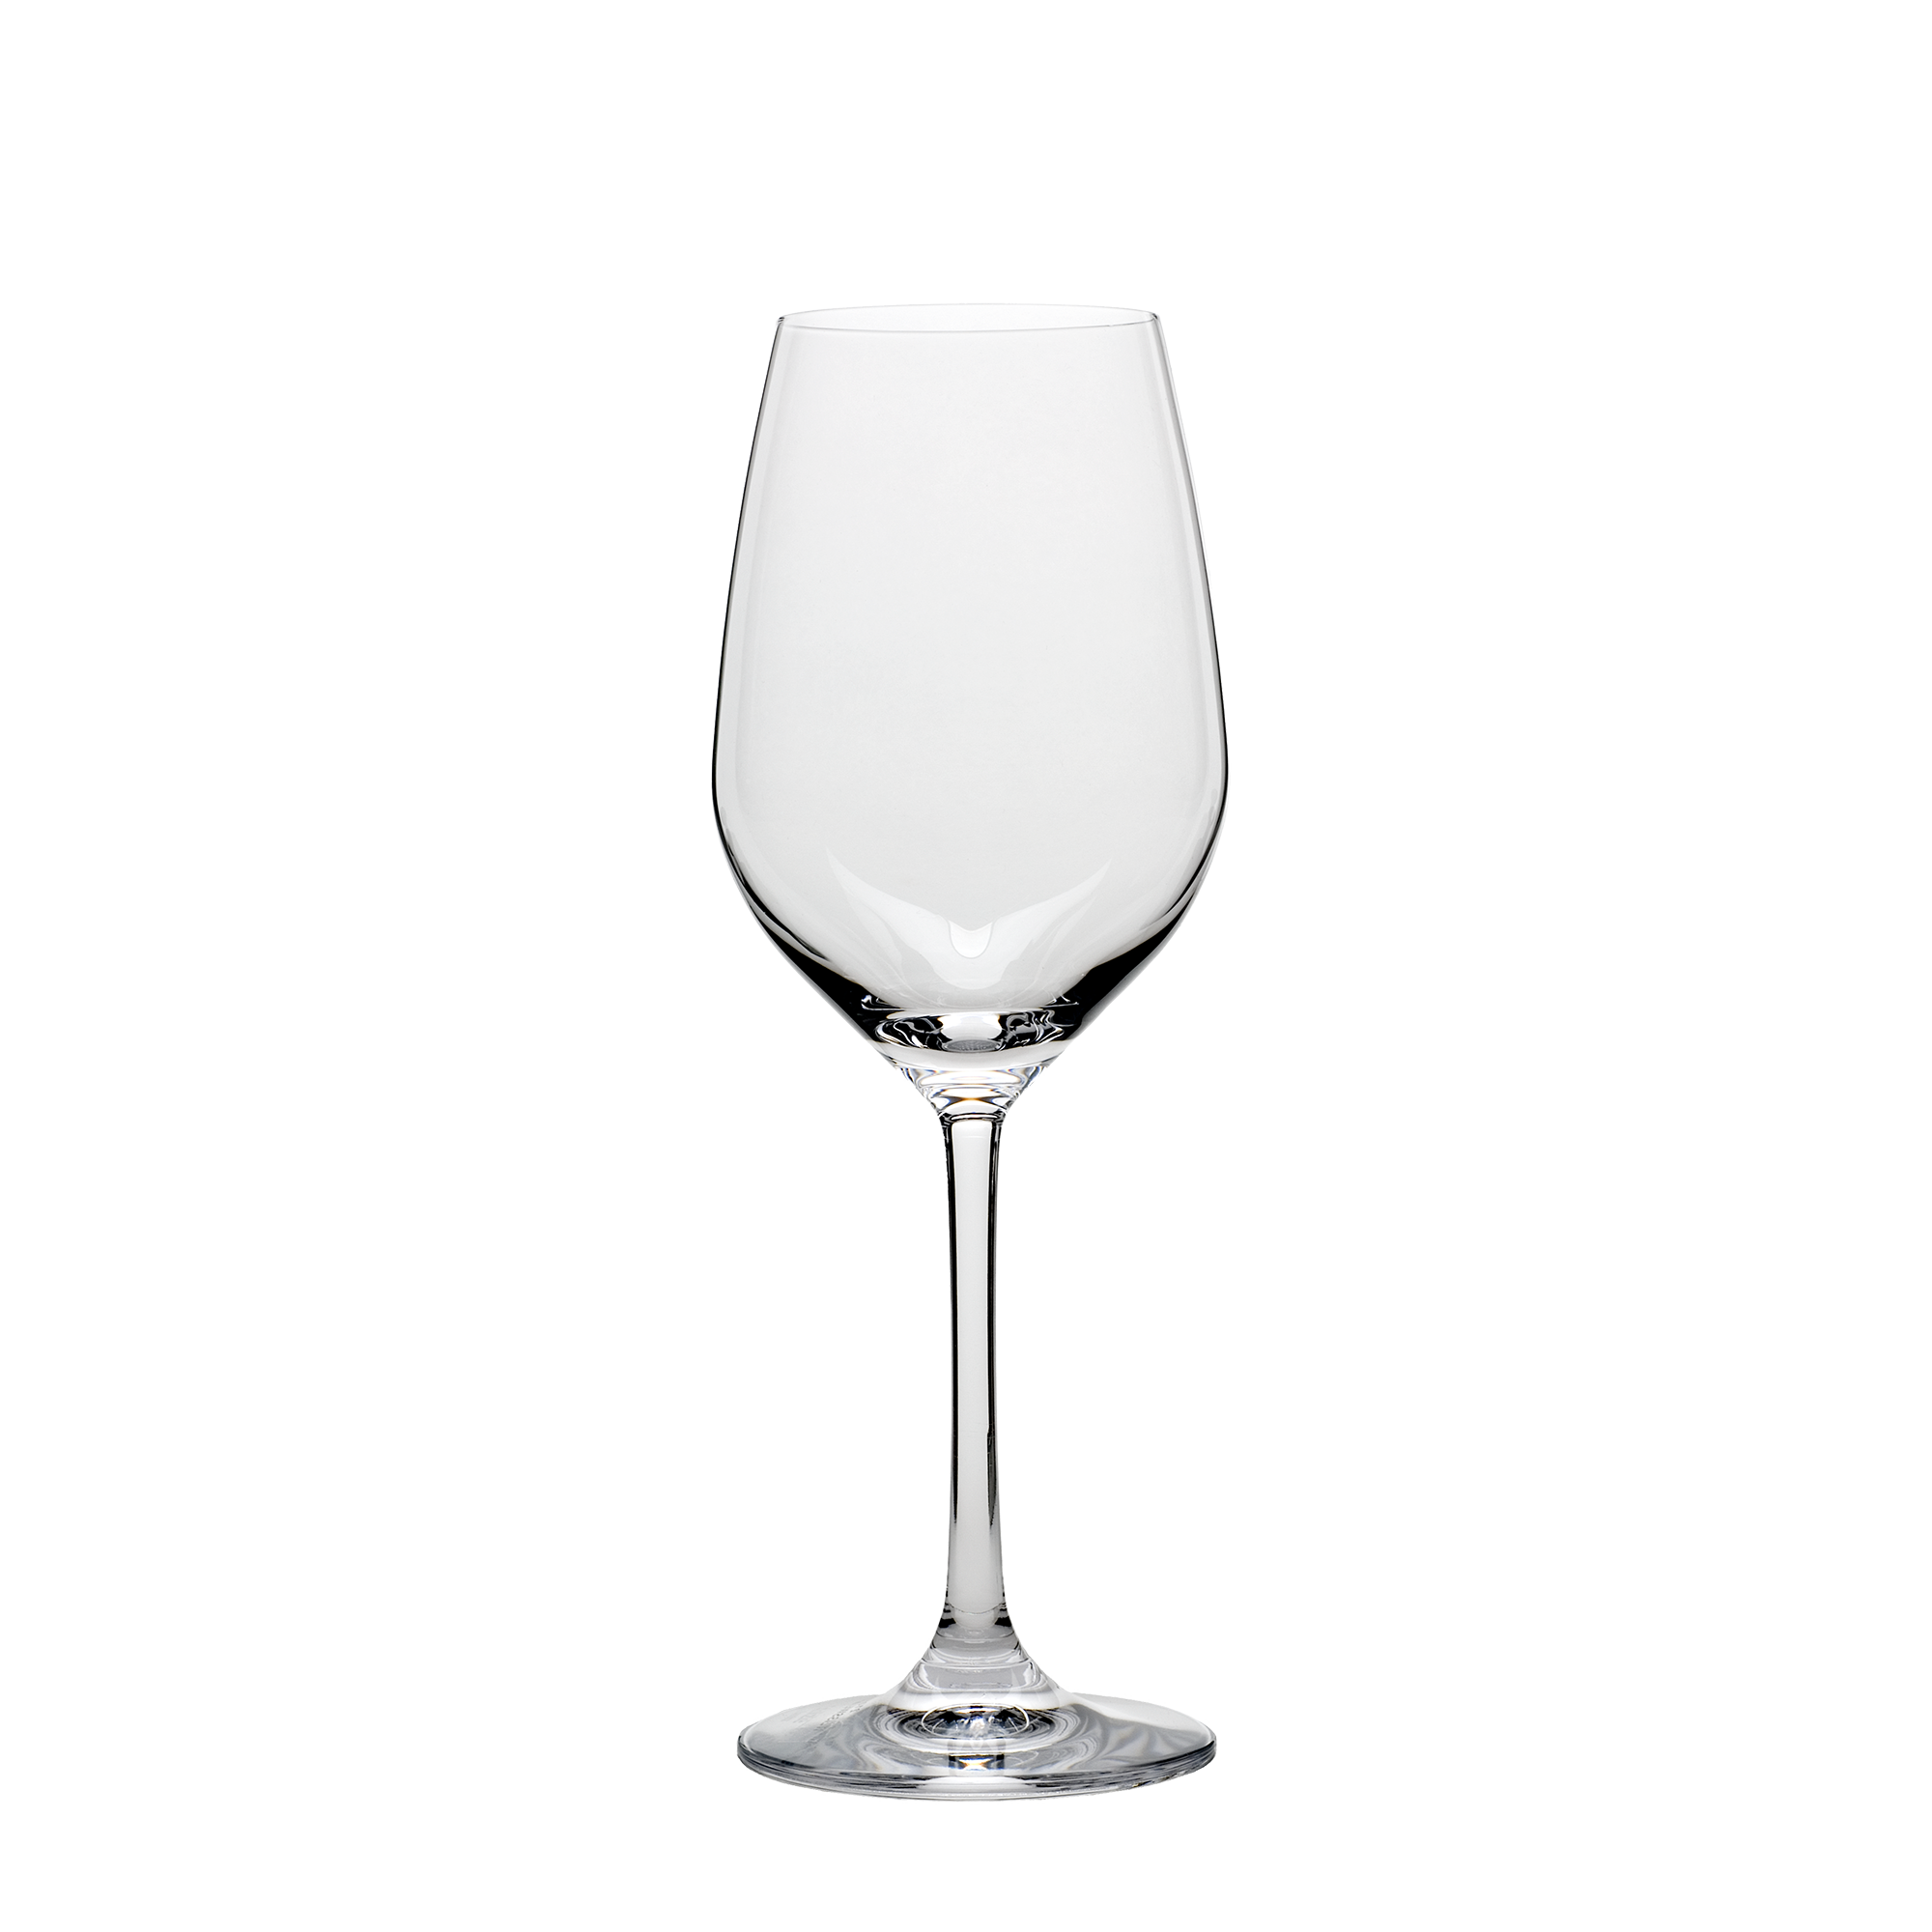 Grand Epicurean White Wine Glass 9.5 oz. - Set of 4